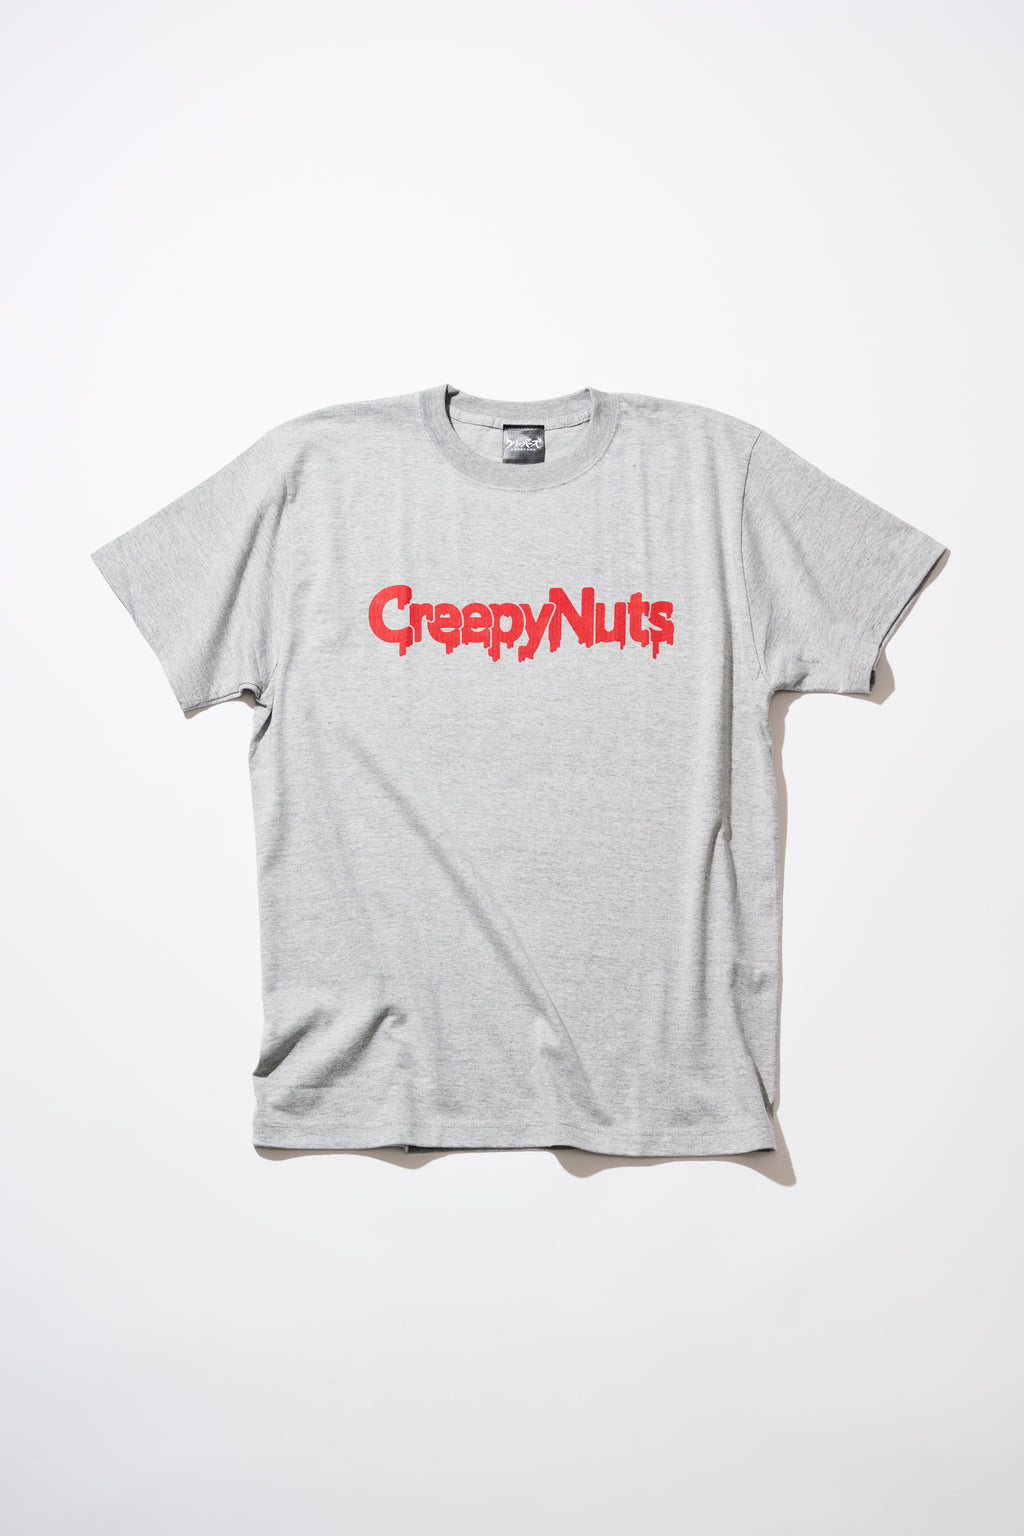 メール便送料無料対応可】 Creepy クリーピーナッツ ロゴ Tシャツ 初期